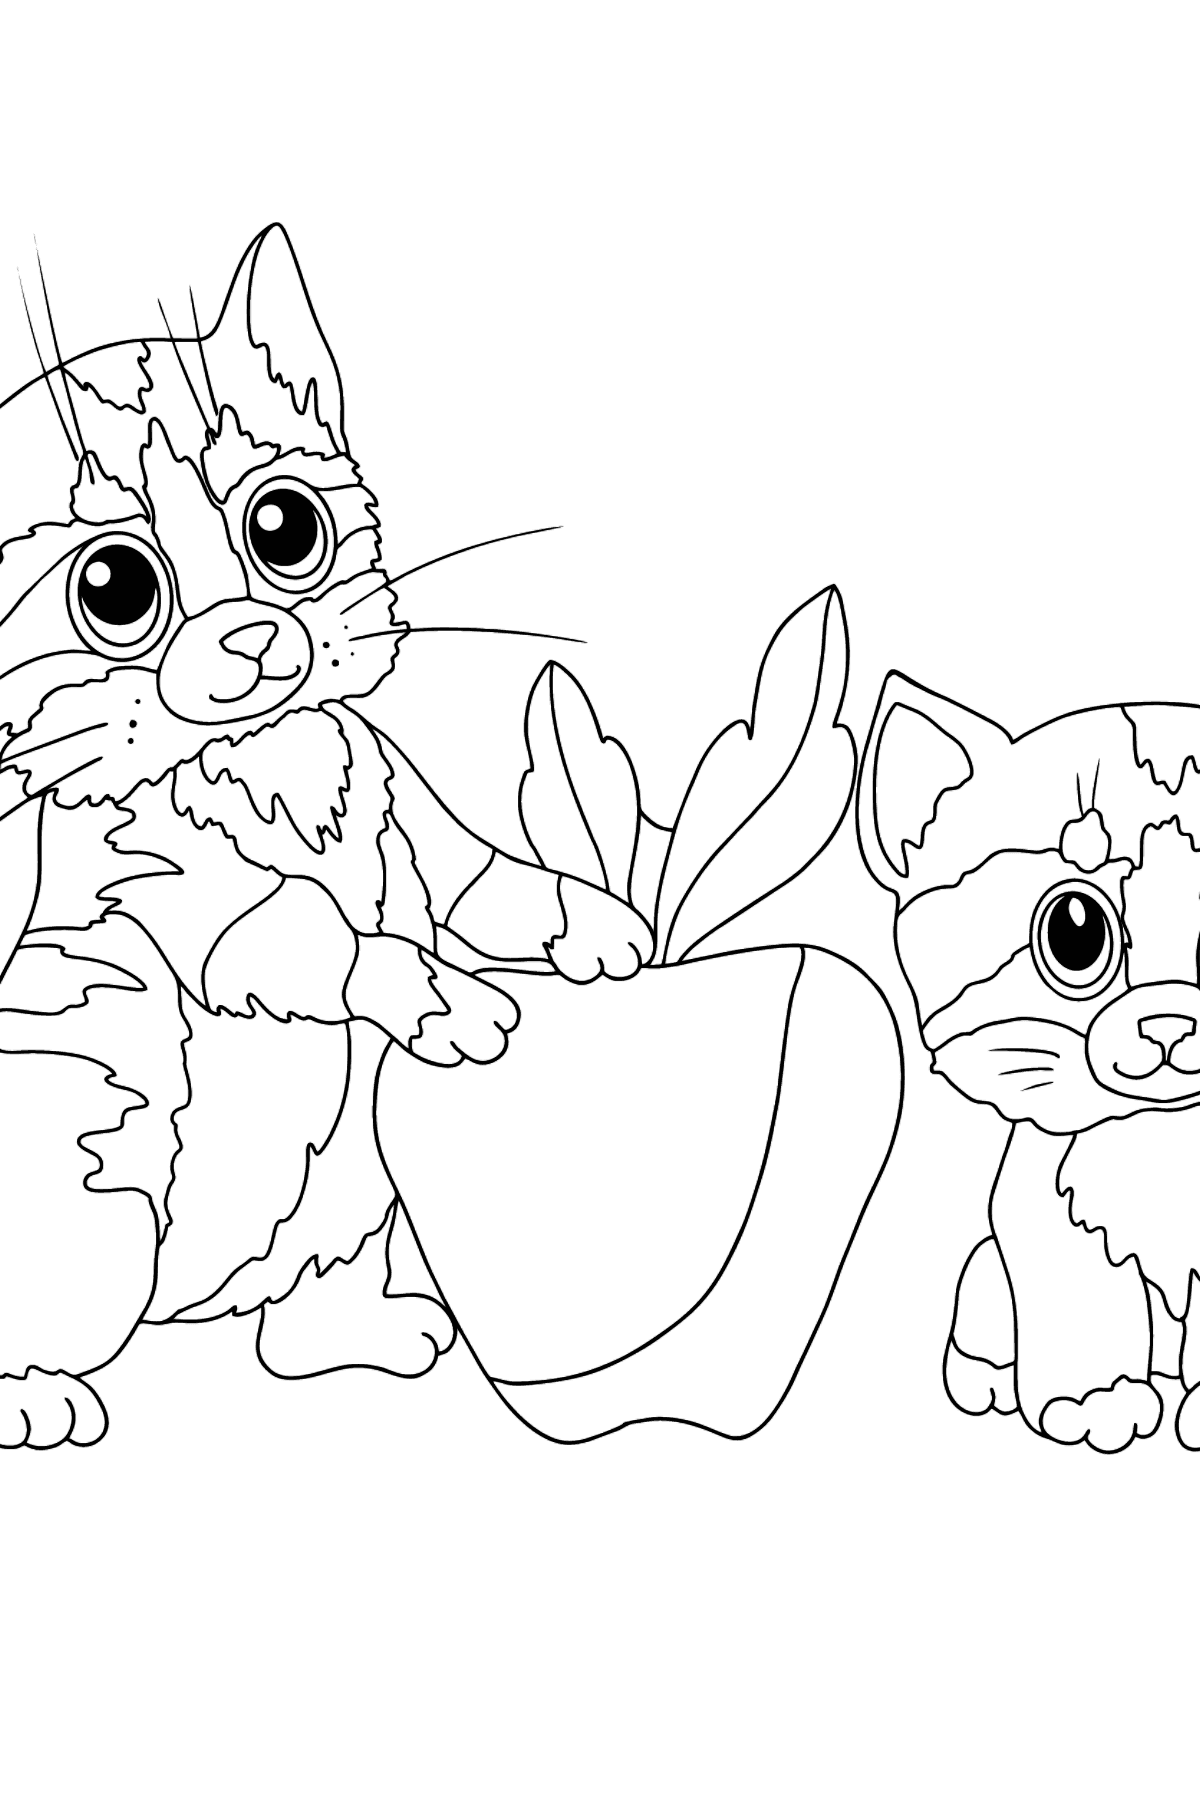 Tegning til fargelegging lekne kattunger (vanskelig) - Tegninger til fargelegging for barn